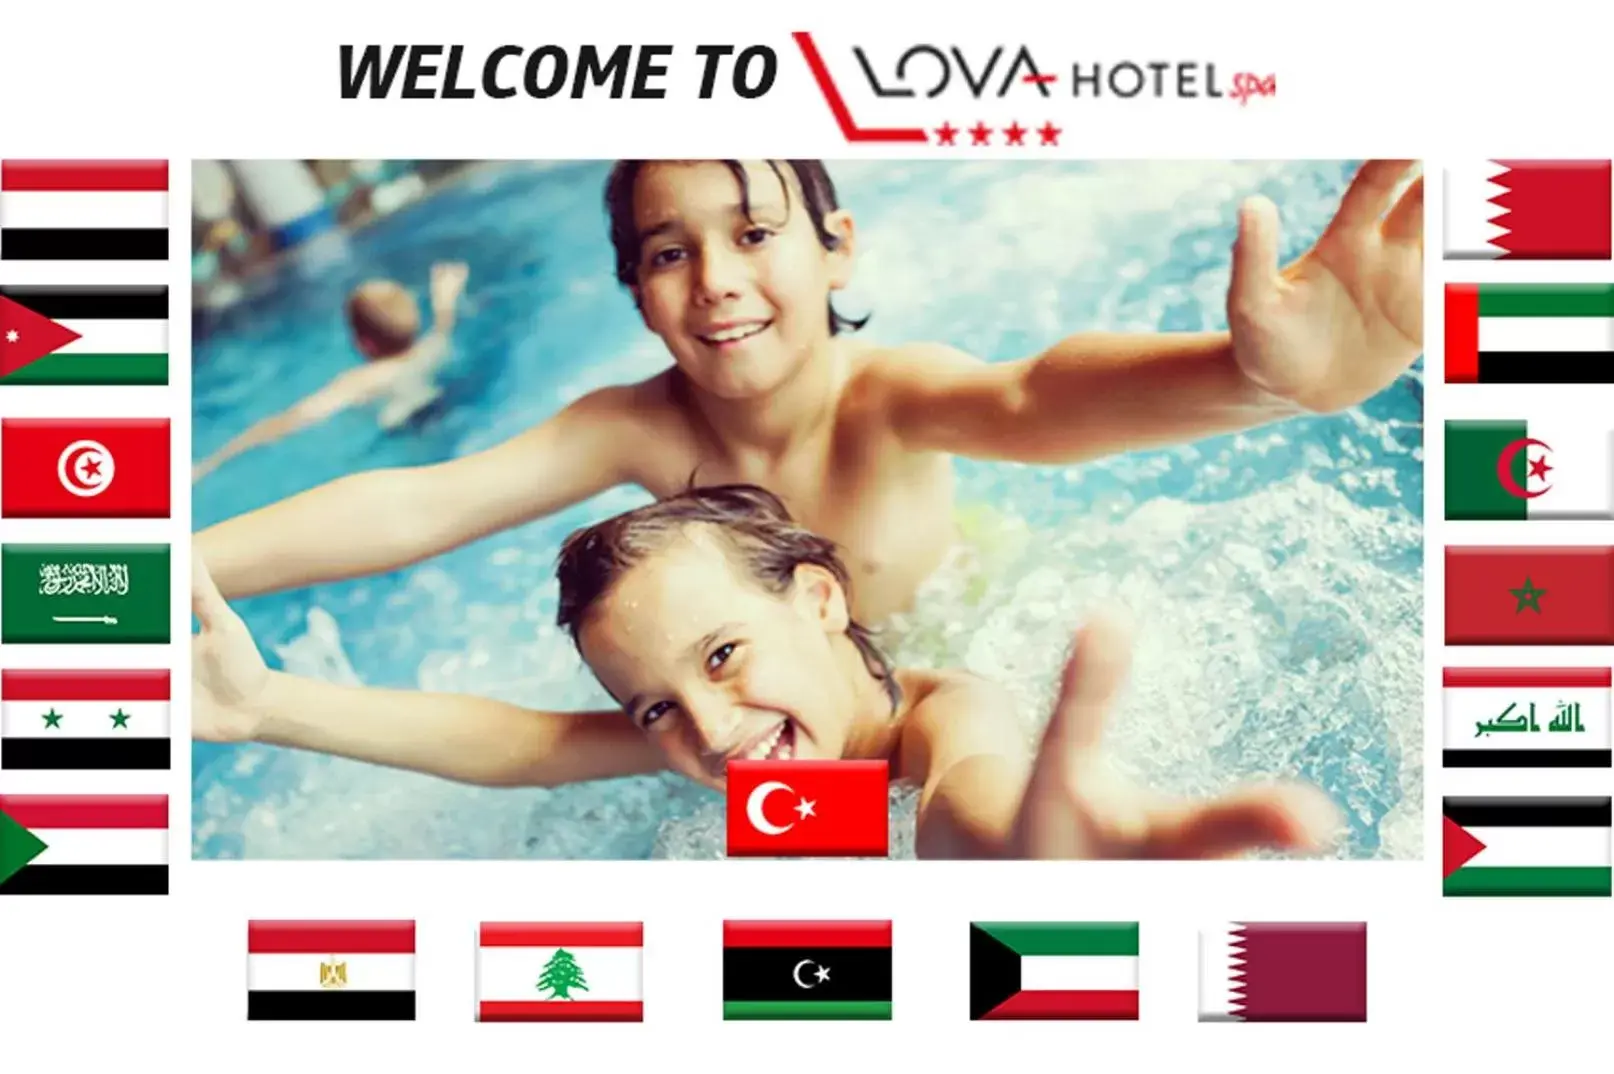 Area and facilities in Yalova Lova Hotel & SPA Yalova